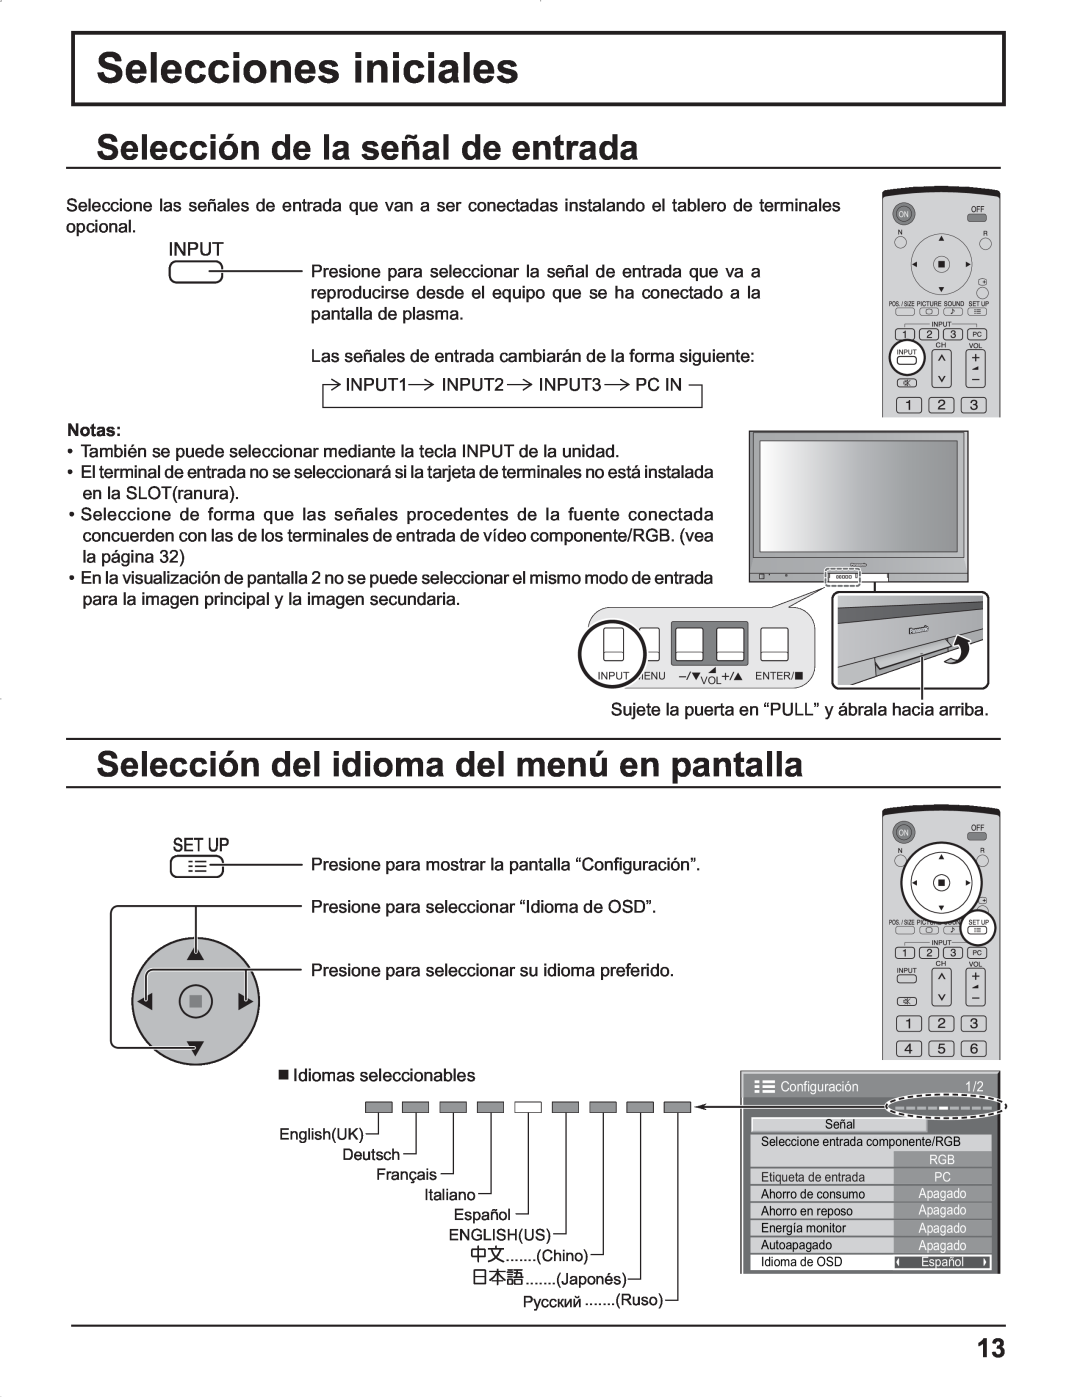 Panasonic TH-37PG9U Selecciones iniciales, Selección de la señal de entrada, Selección del idioma del menú en pantalla 